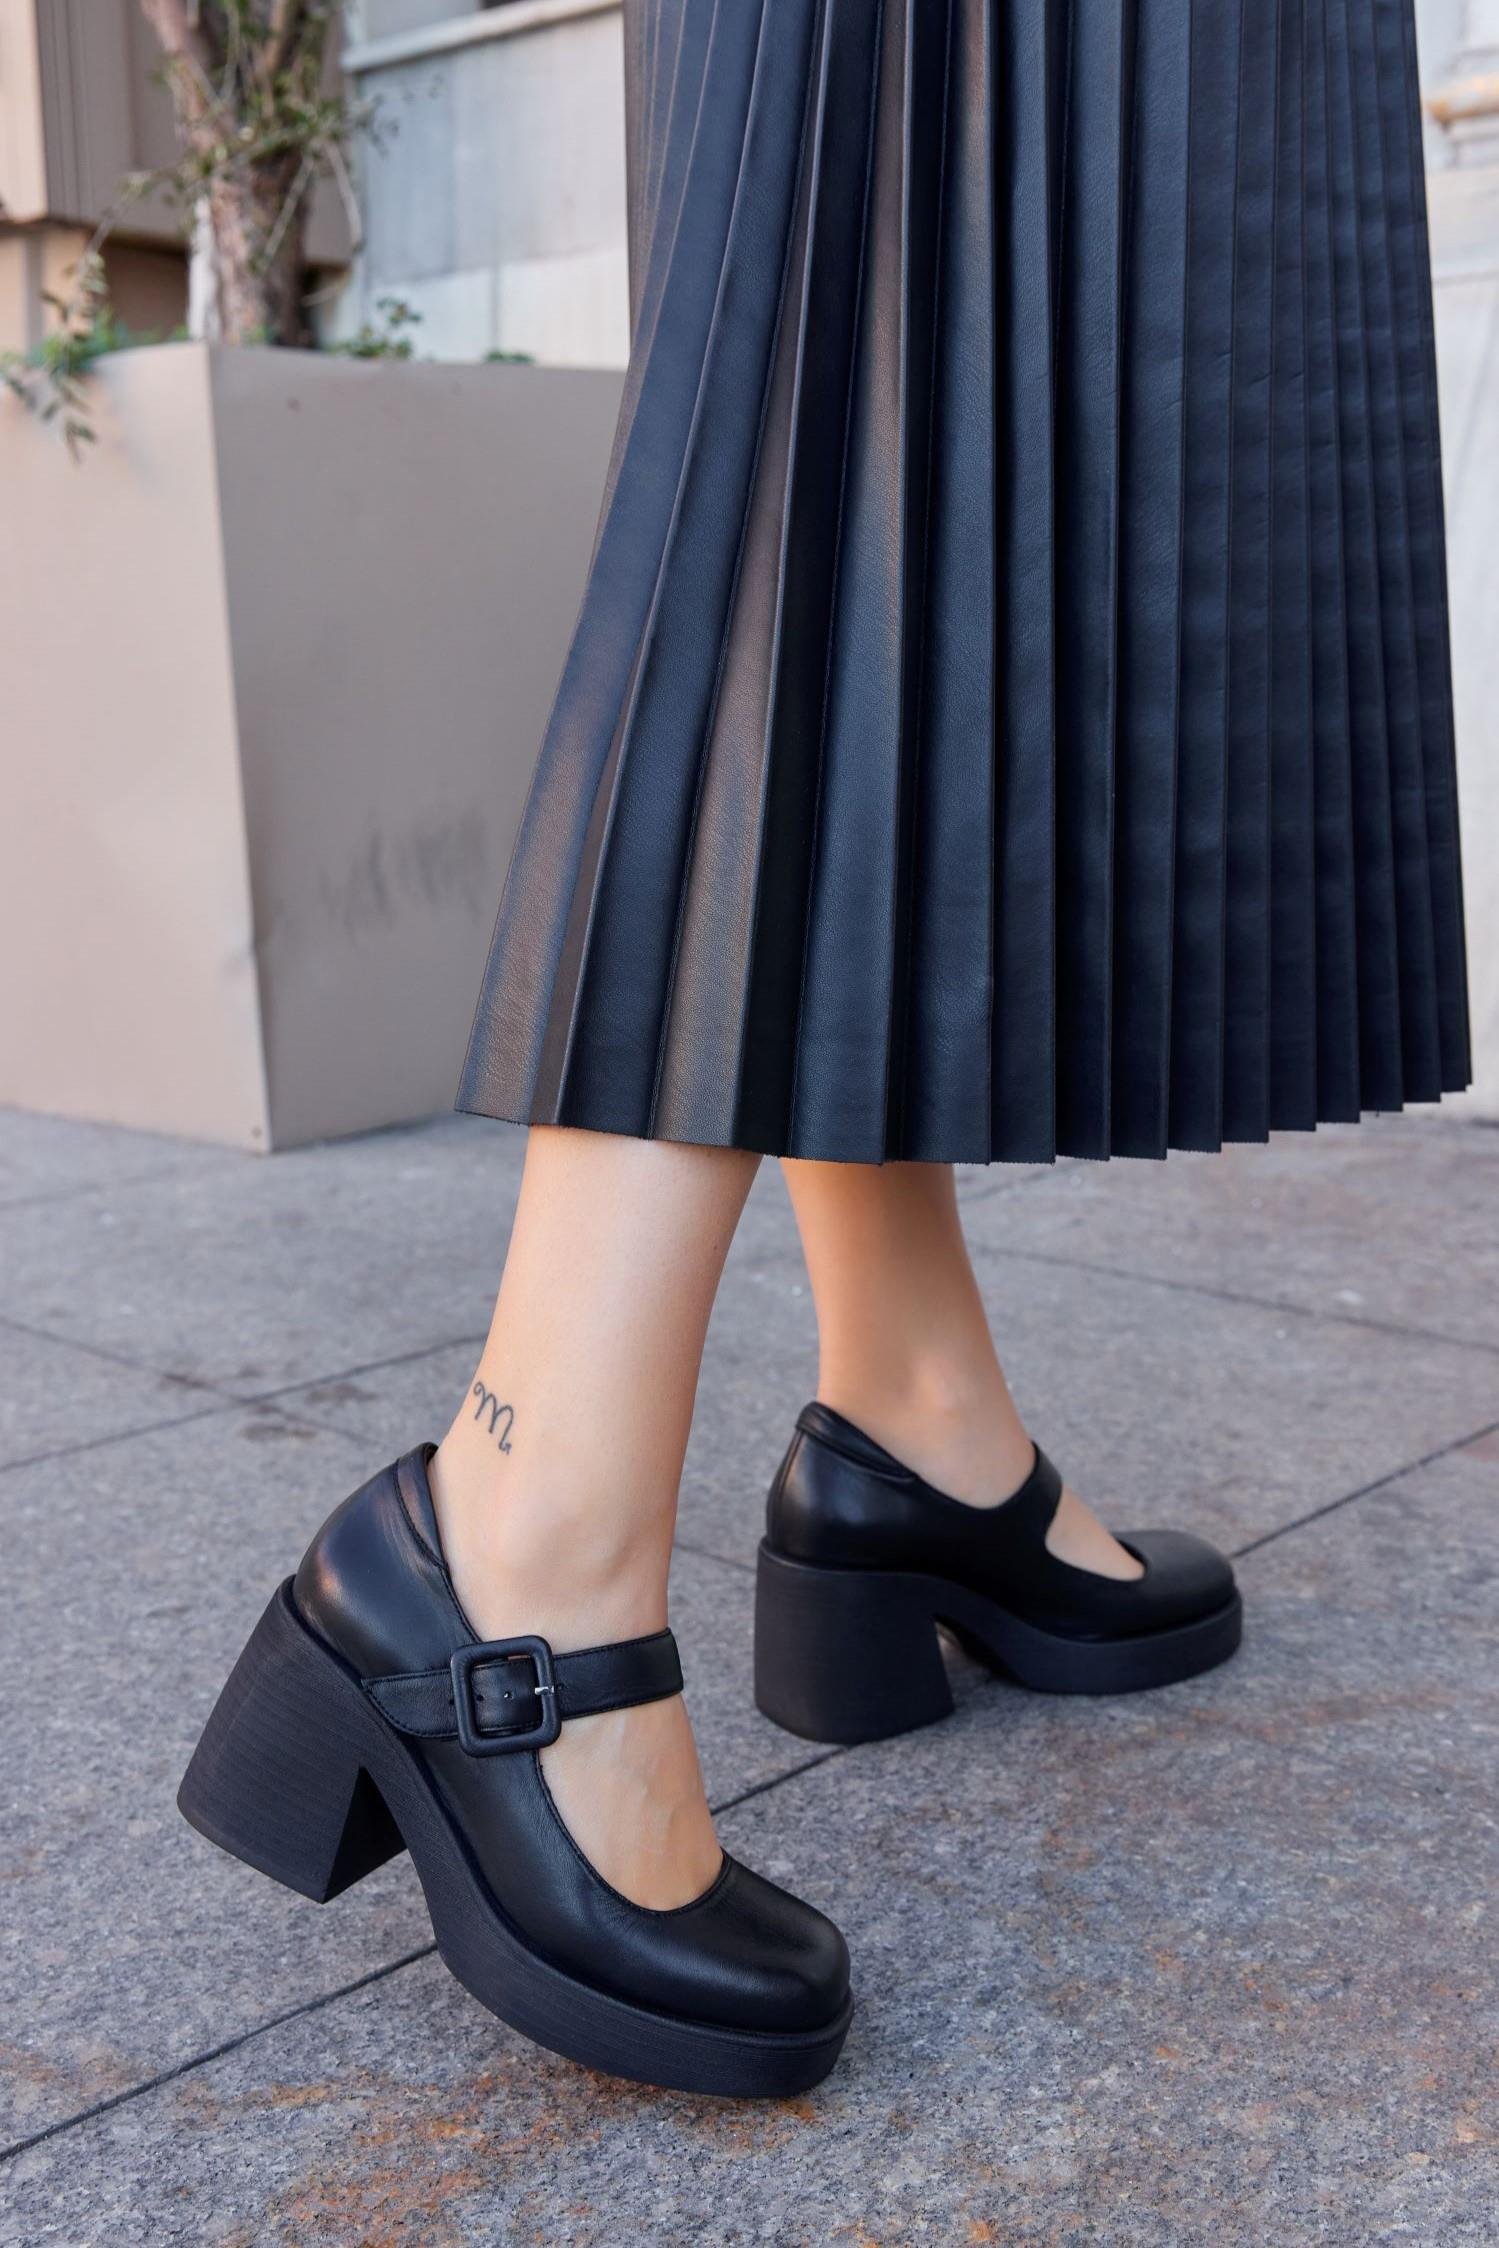 Nilufarr Celine Siyah Hakiki Deri Kalın Topuklu Kadın Ayakkabı